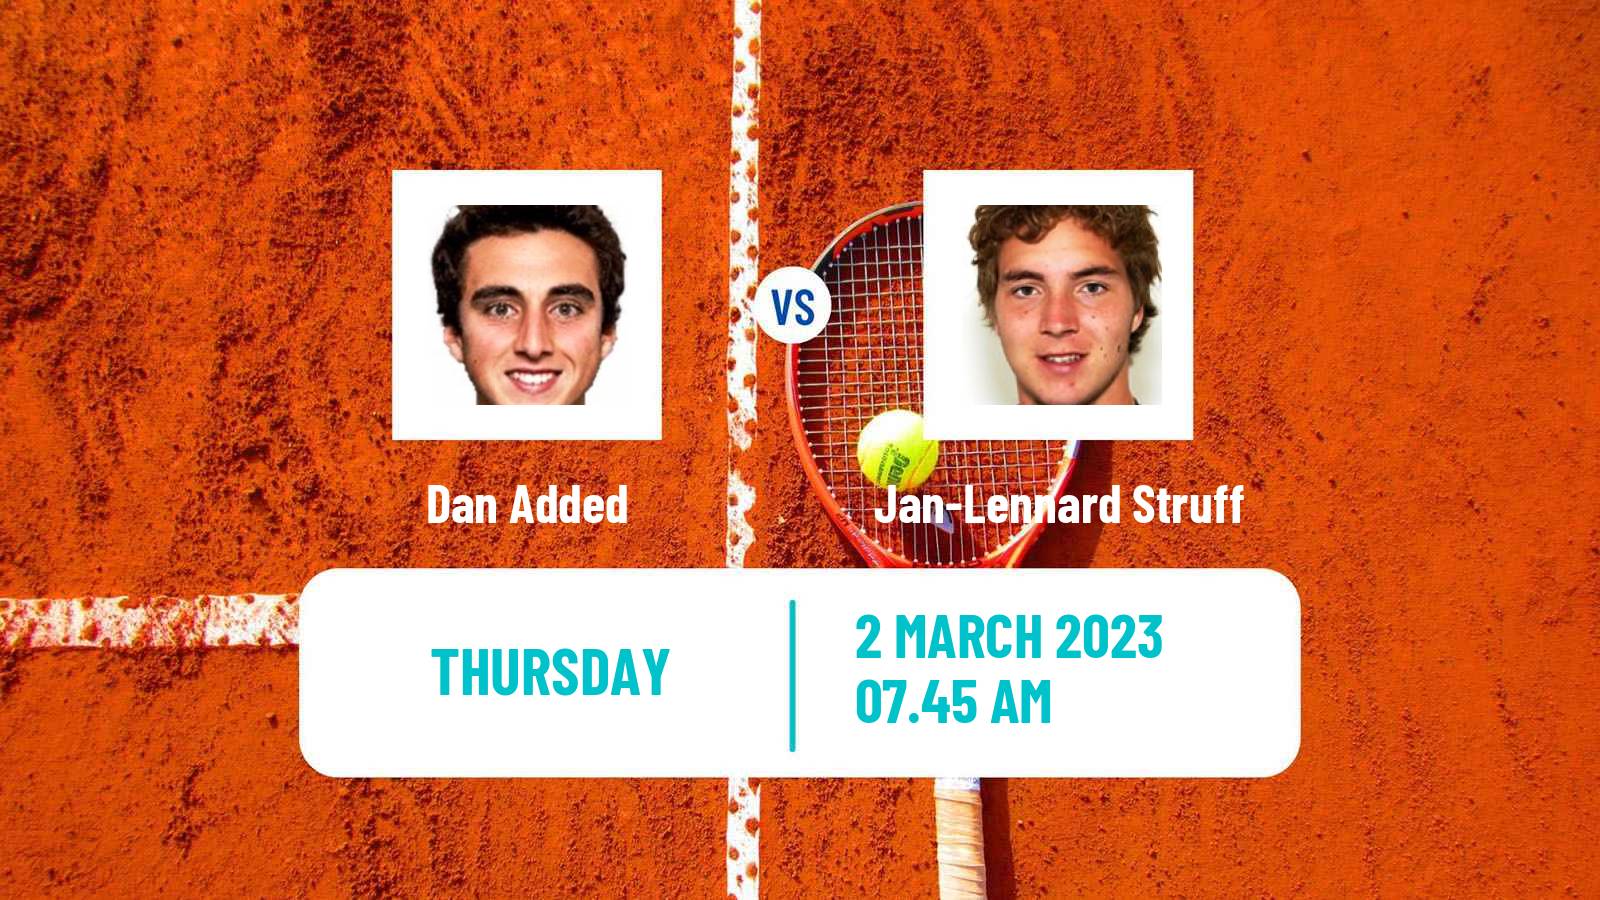 Tennis ATP Challenger Dan Added - Jan-Lennard Struff